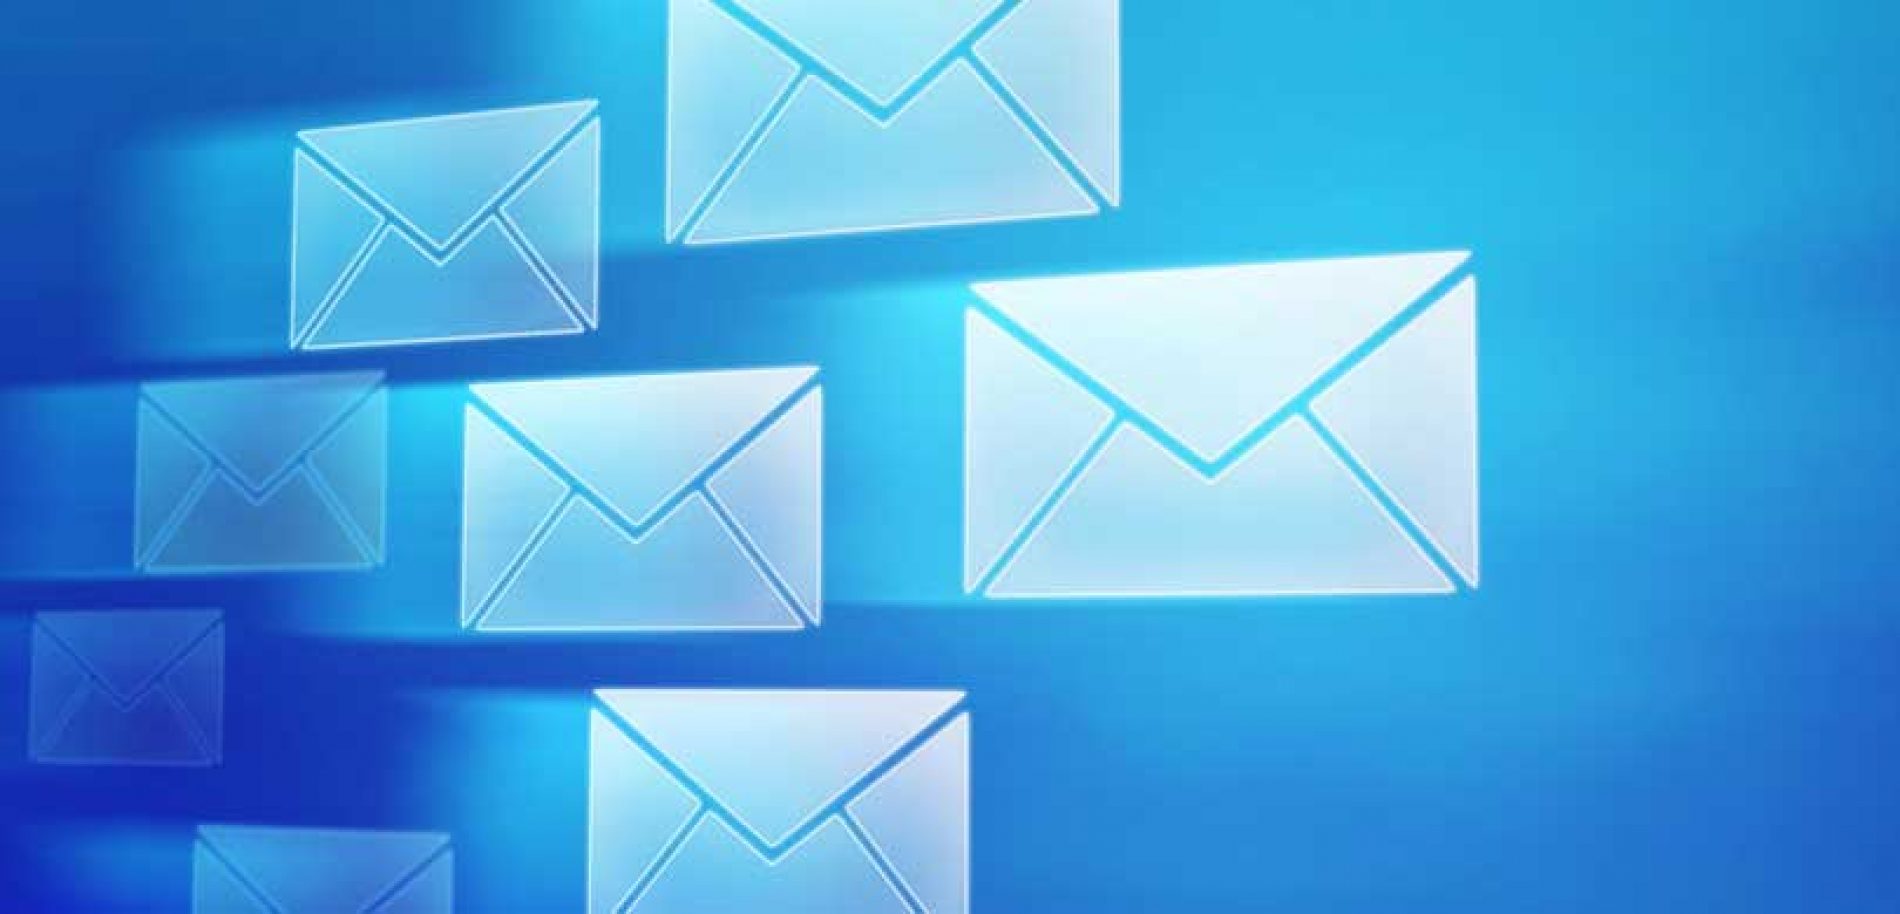 DUYURU : Şubeler Webmail Kullanımı